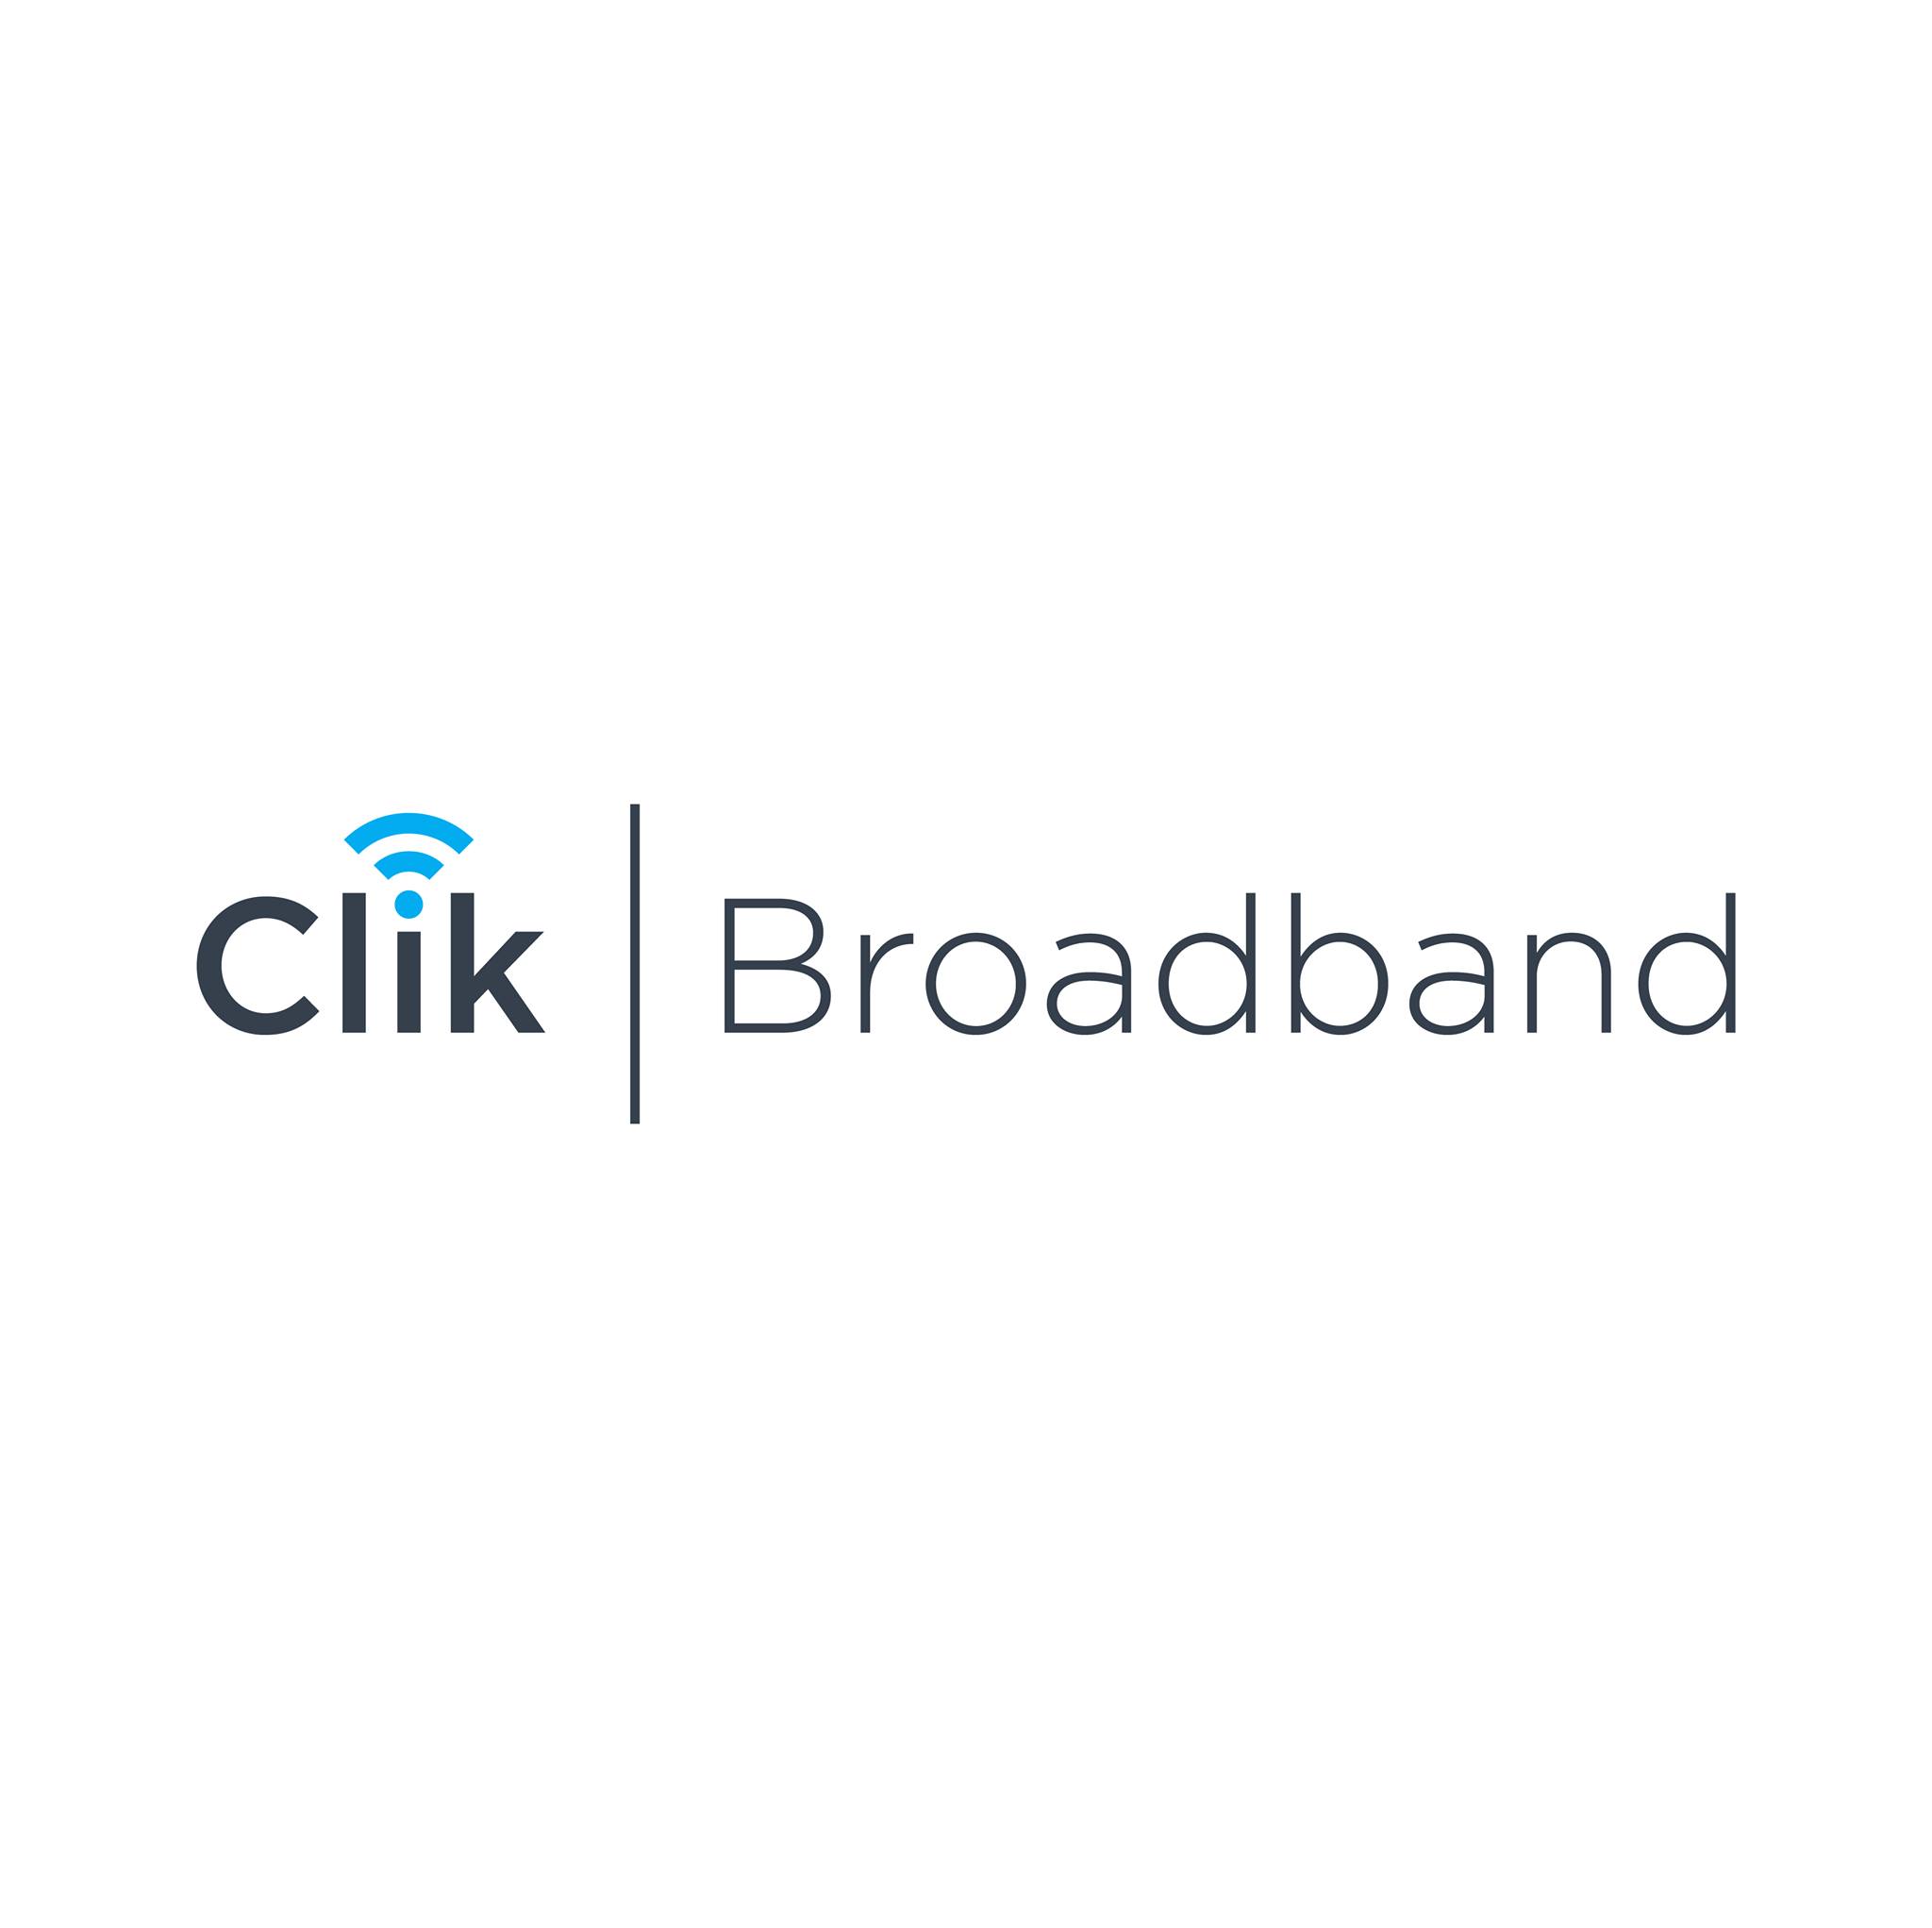 Clik Broadband